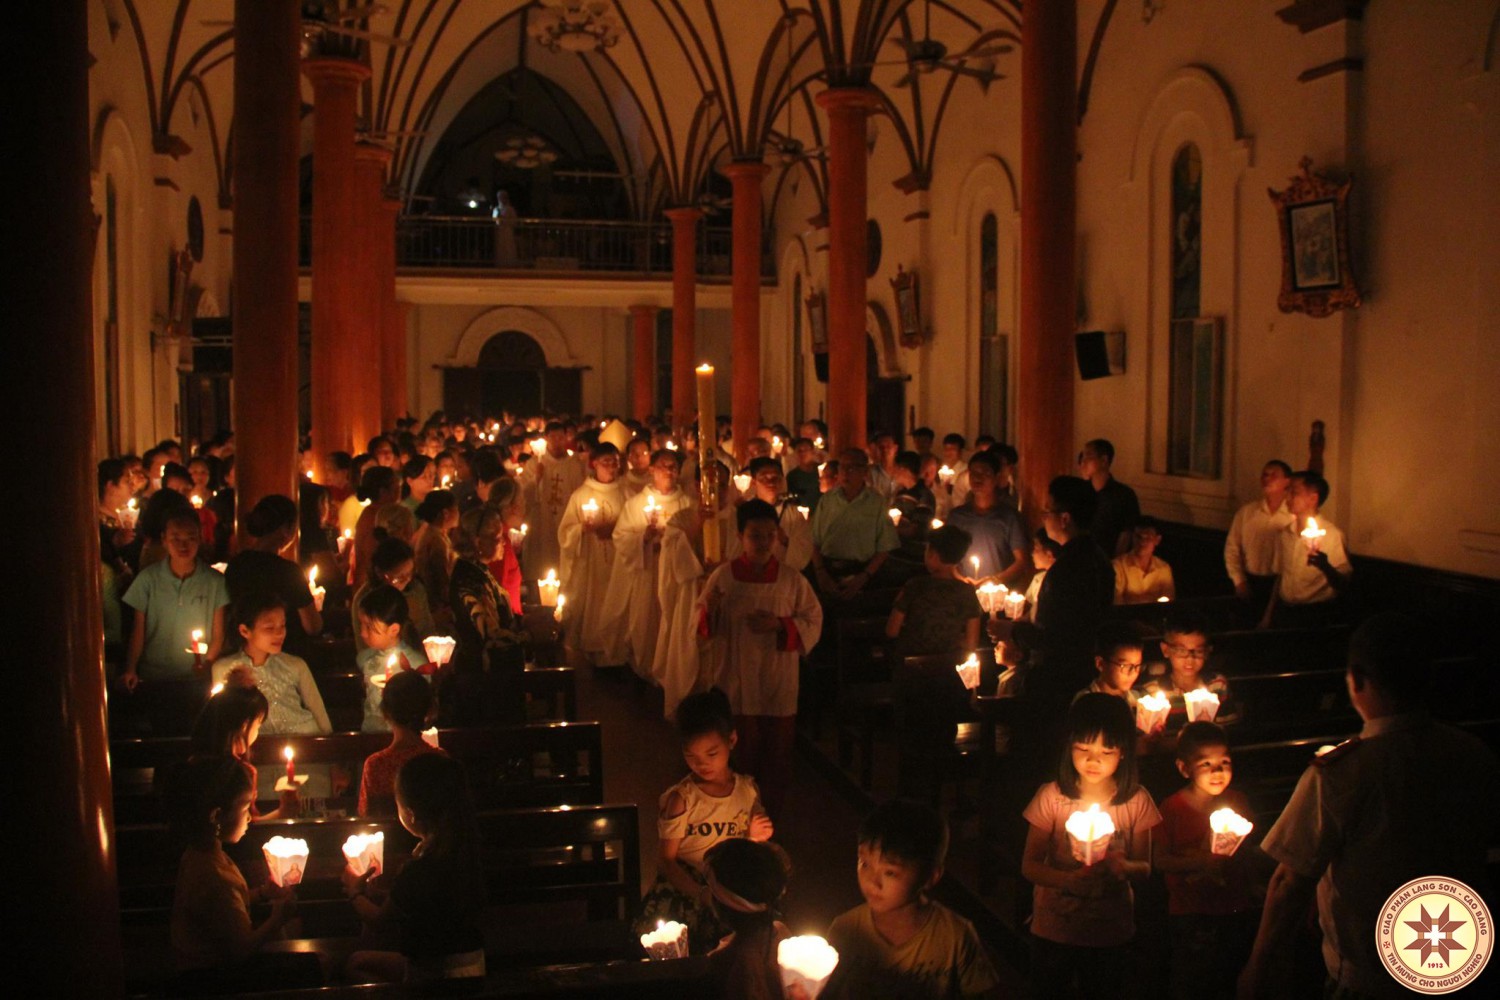 Thánh lễ Vọng Phục Sinh tại Nhà thờ Giáo xứ Mỹ Sơn do Đức cha Giuse chủ sự